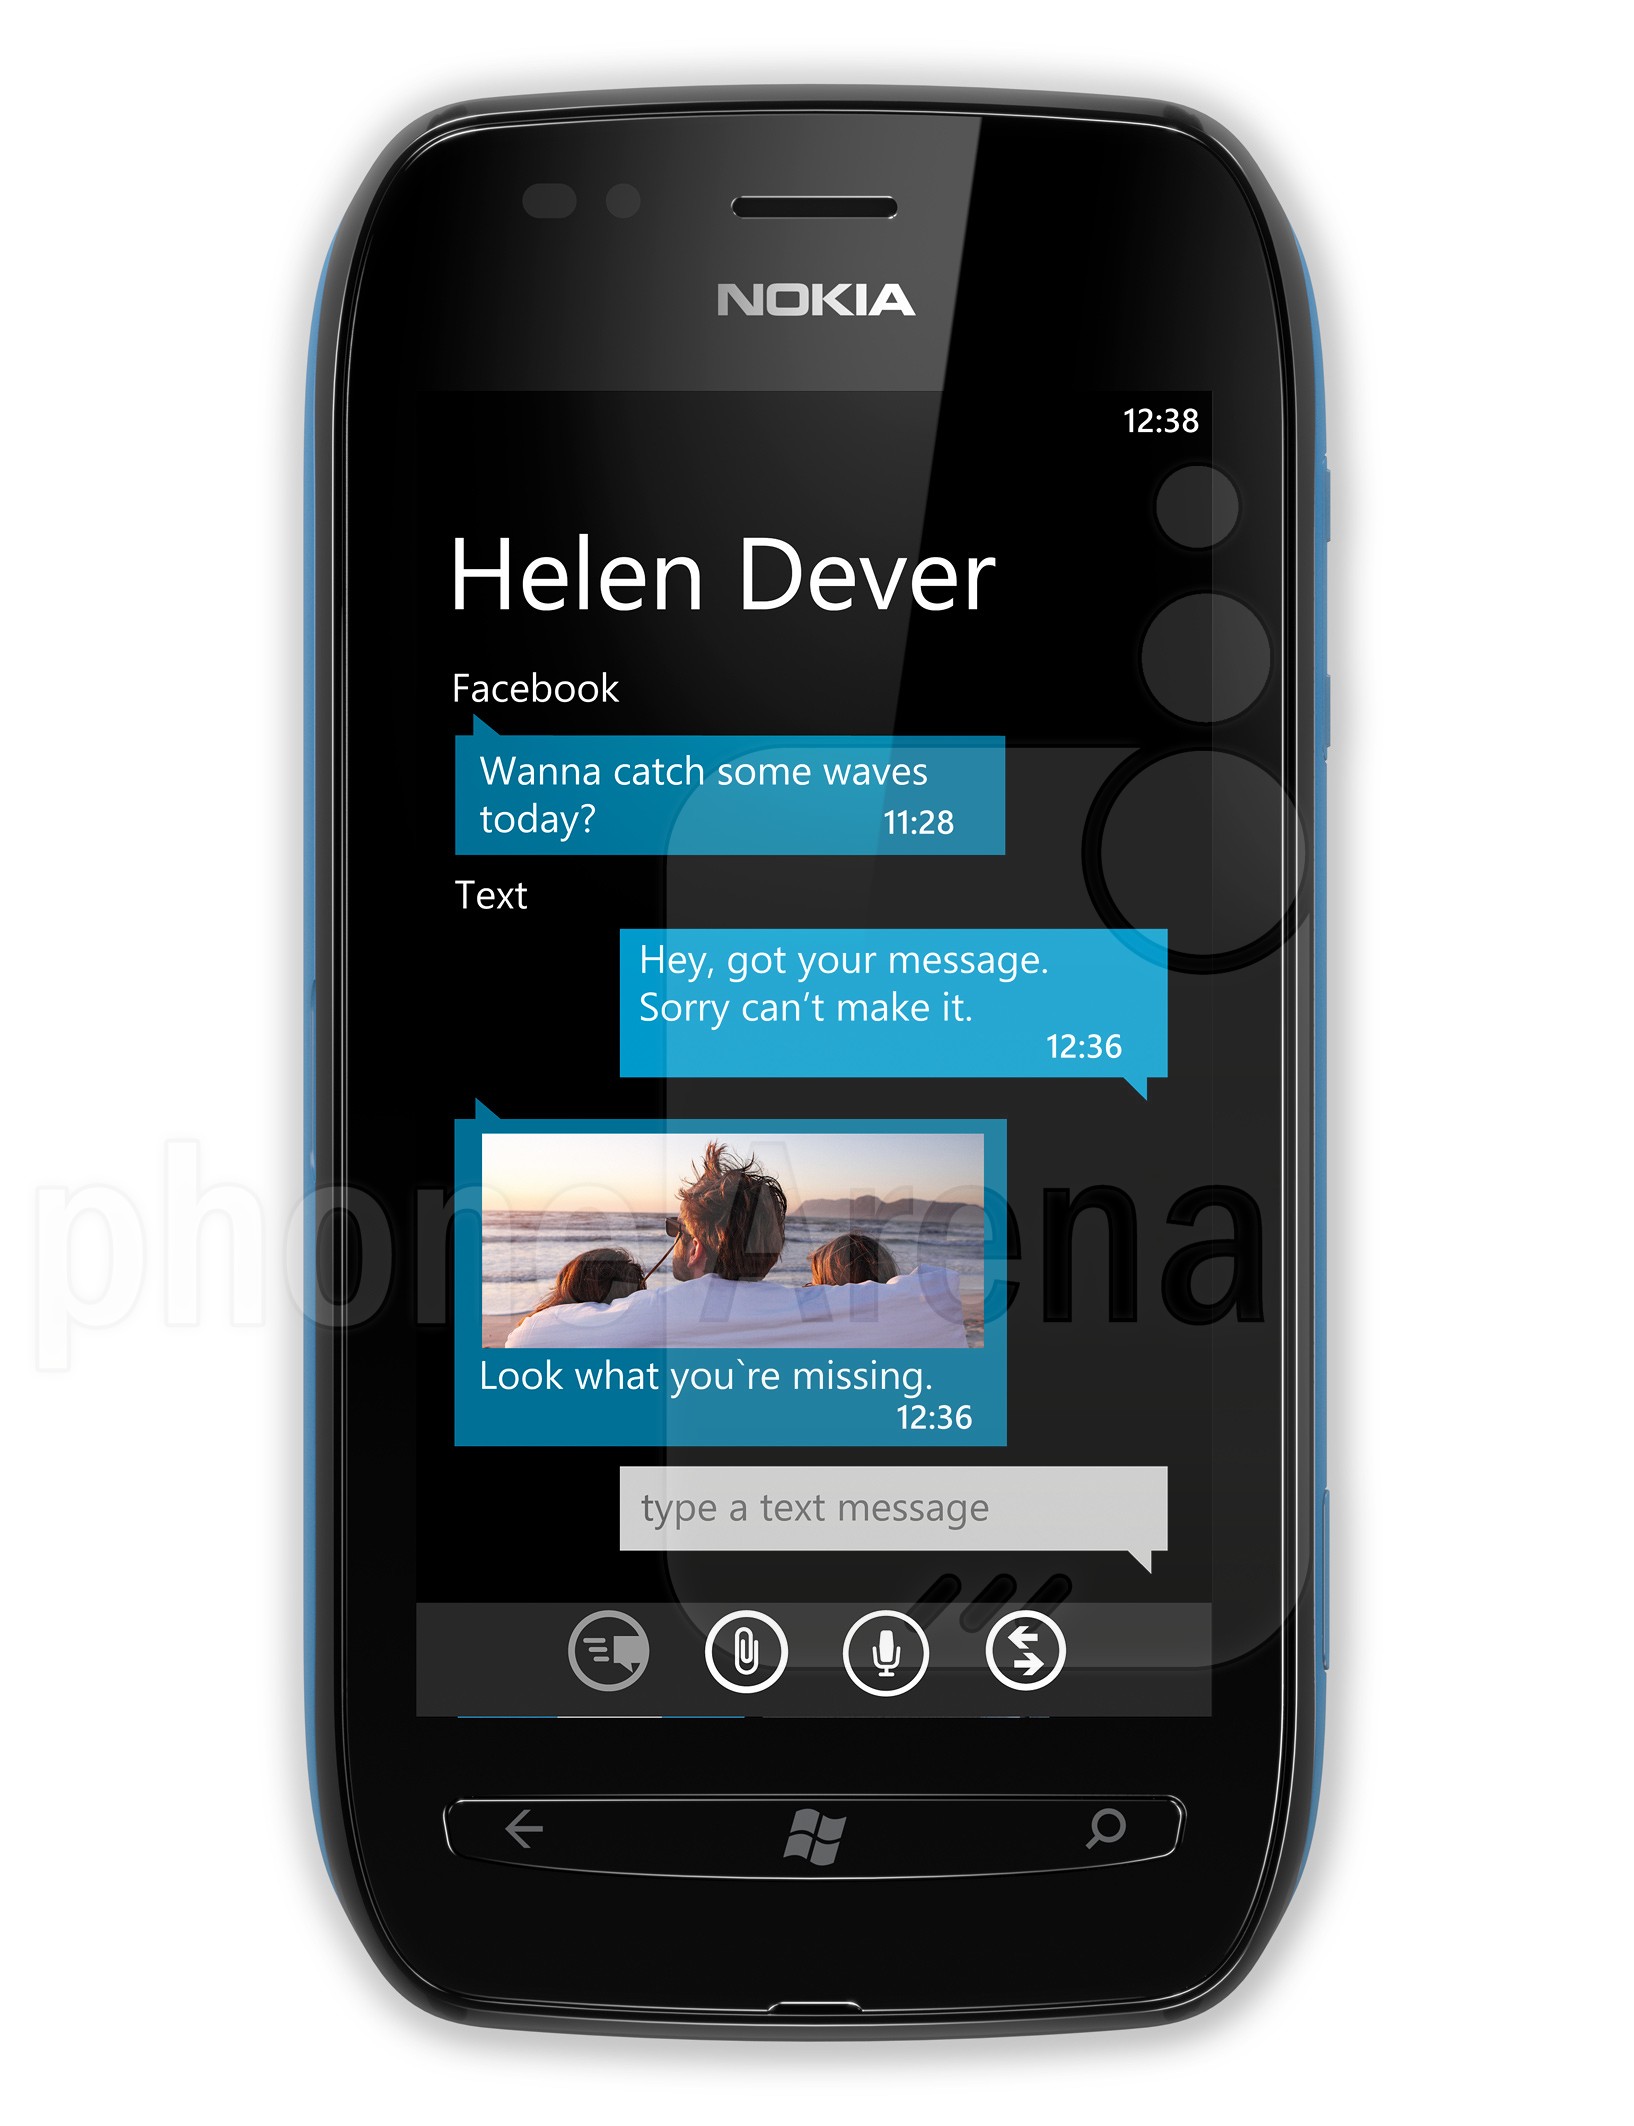 Nokia Lumia 710 specs